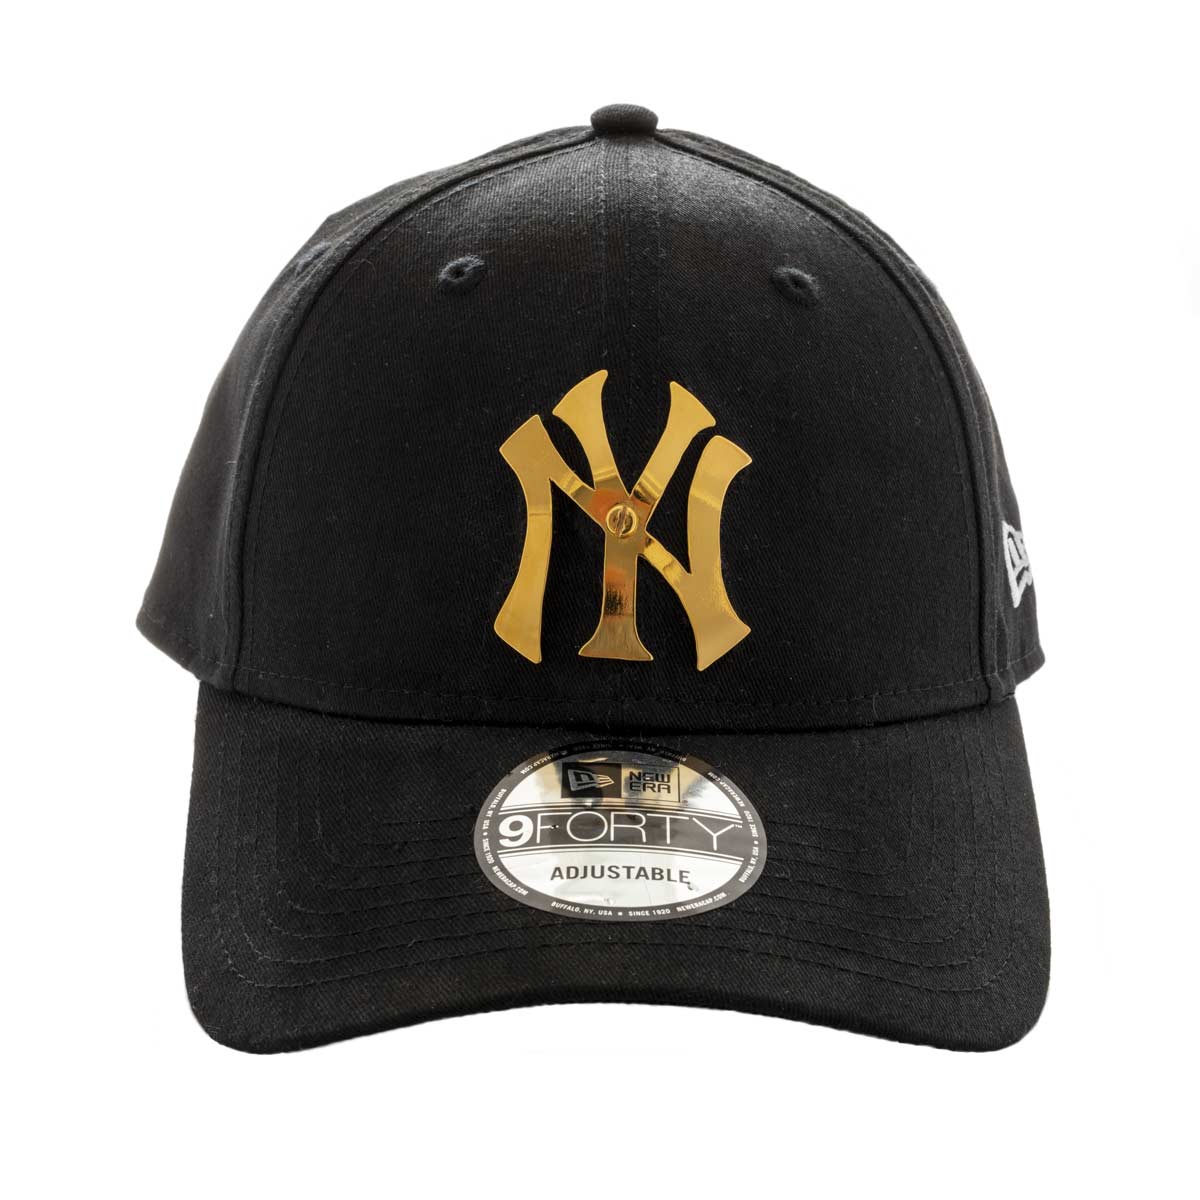 new york yankees cap black